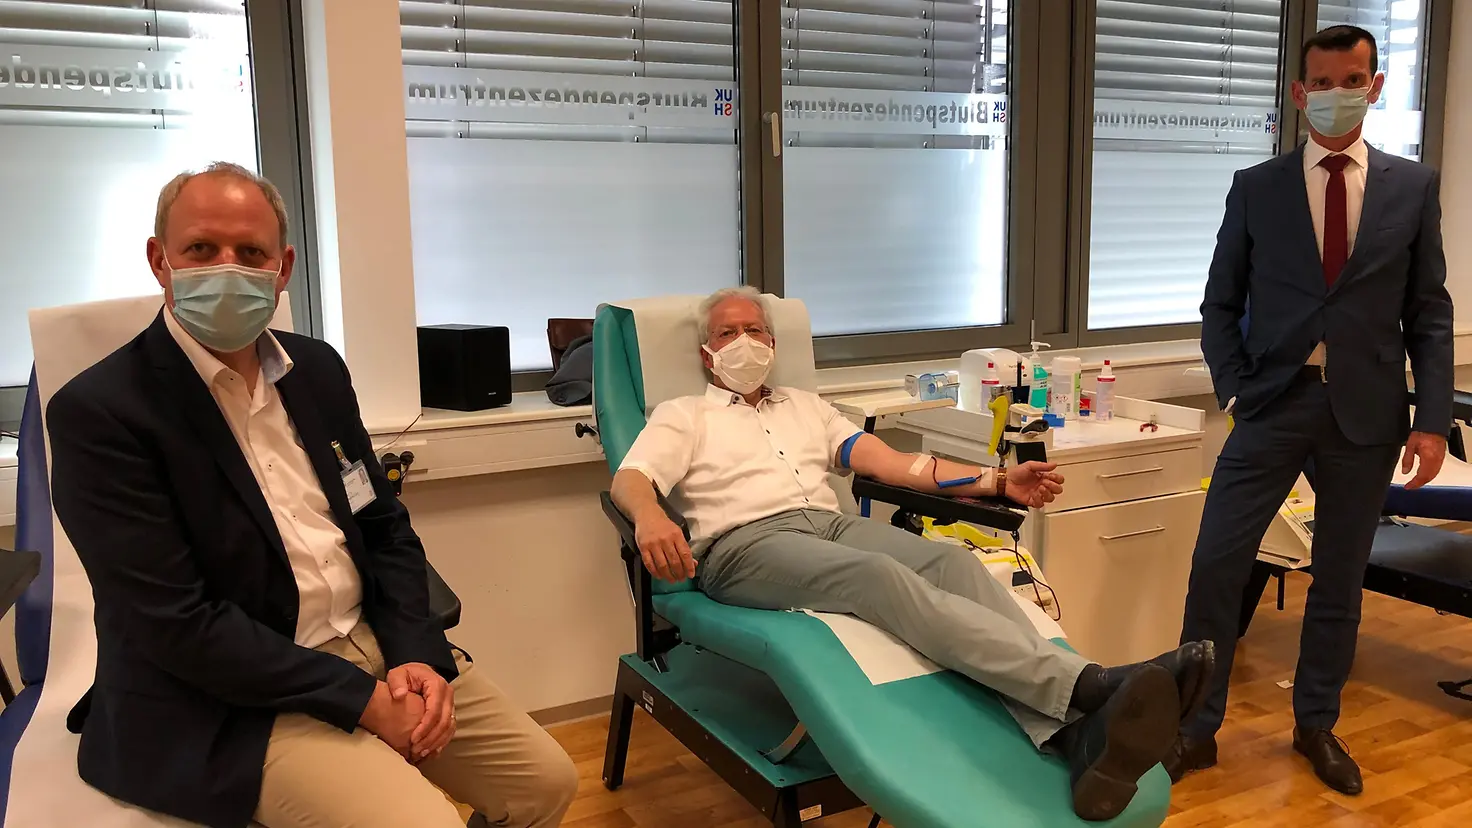 Blutspende im Blutspendezentrum UKSH, von links nach rechts Prof. Dr. Siegfried Görg, Dr. Bernd Hillebrandt, Peter Pansegrau 